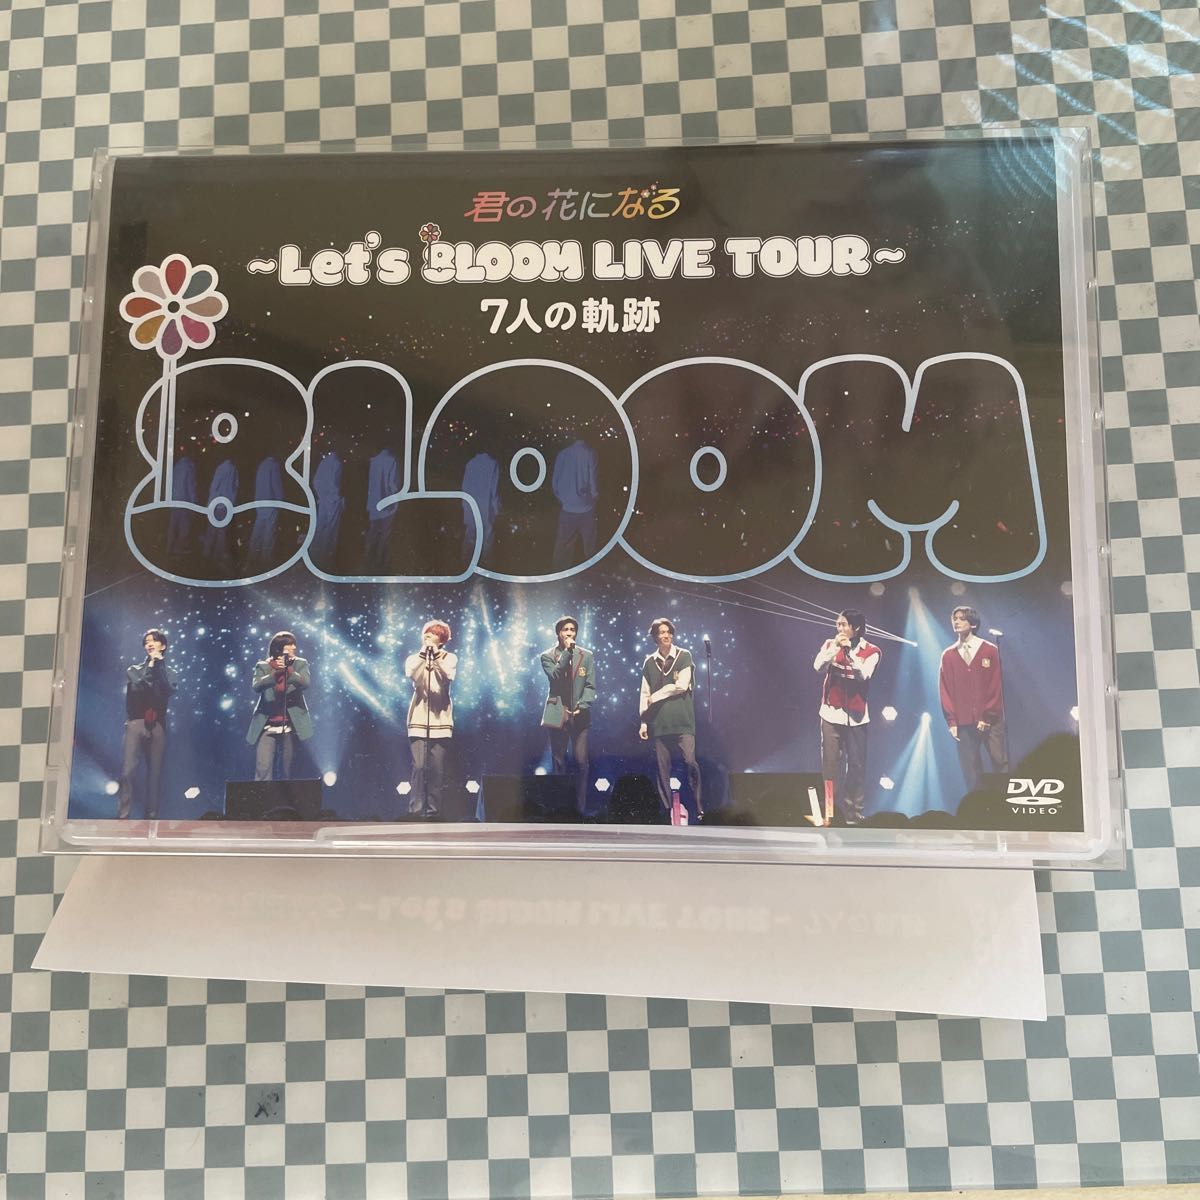 初回限定盤】君の花になる Let's 8LOOM LIVE TOUR～7人の軌跡 DVD